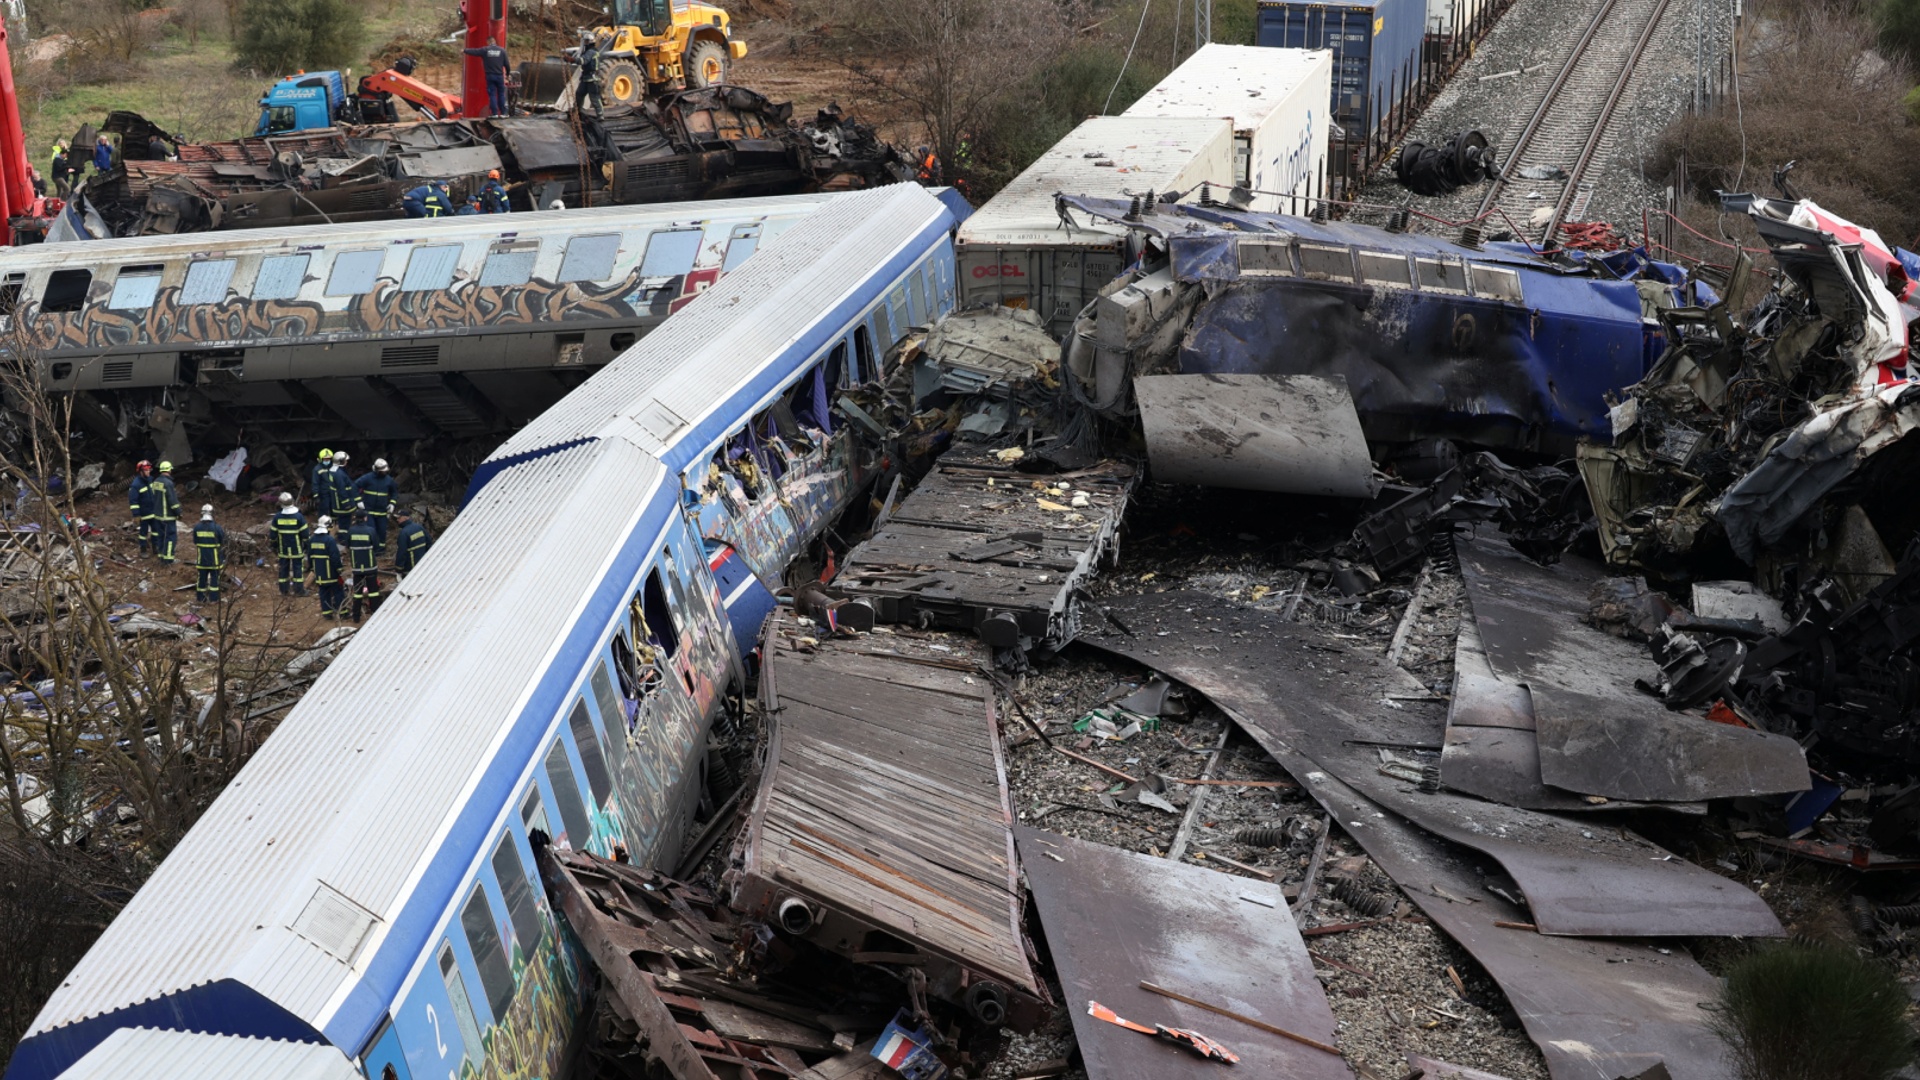 Начальник ж/д станции в Греции взял на себя ответственность за крушение поездов